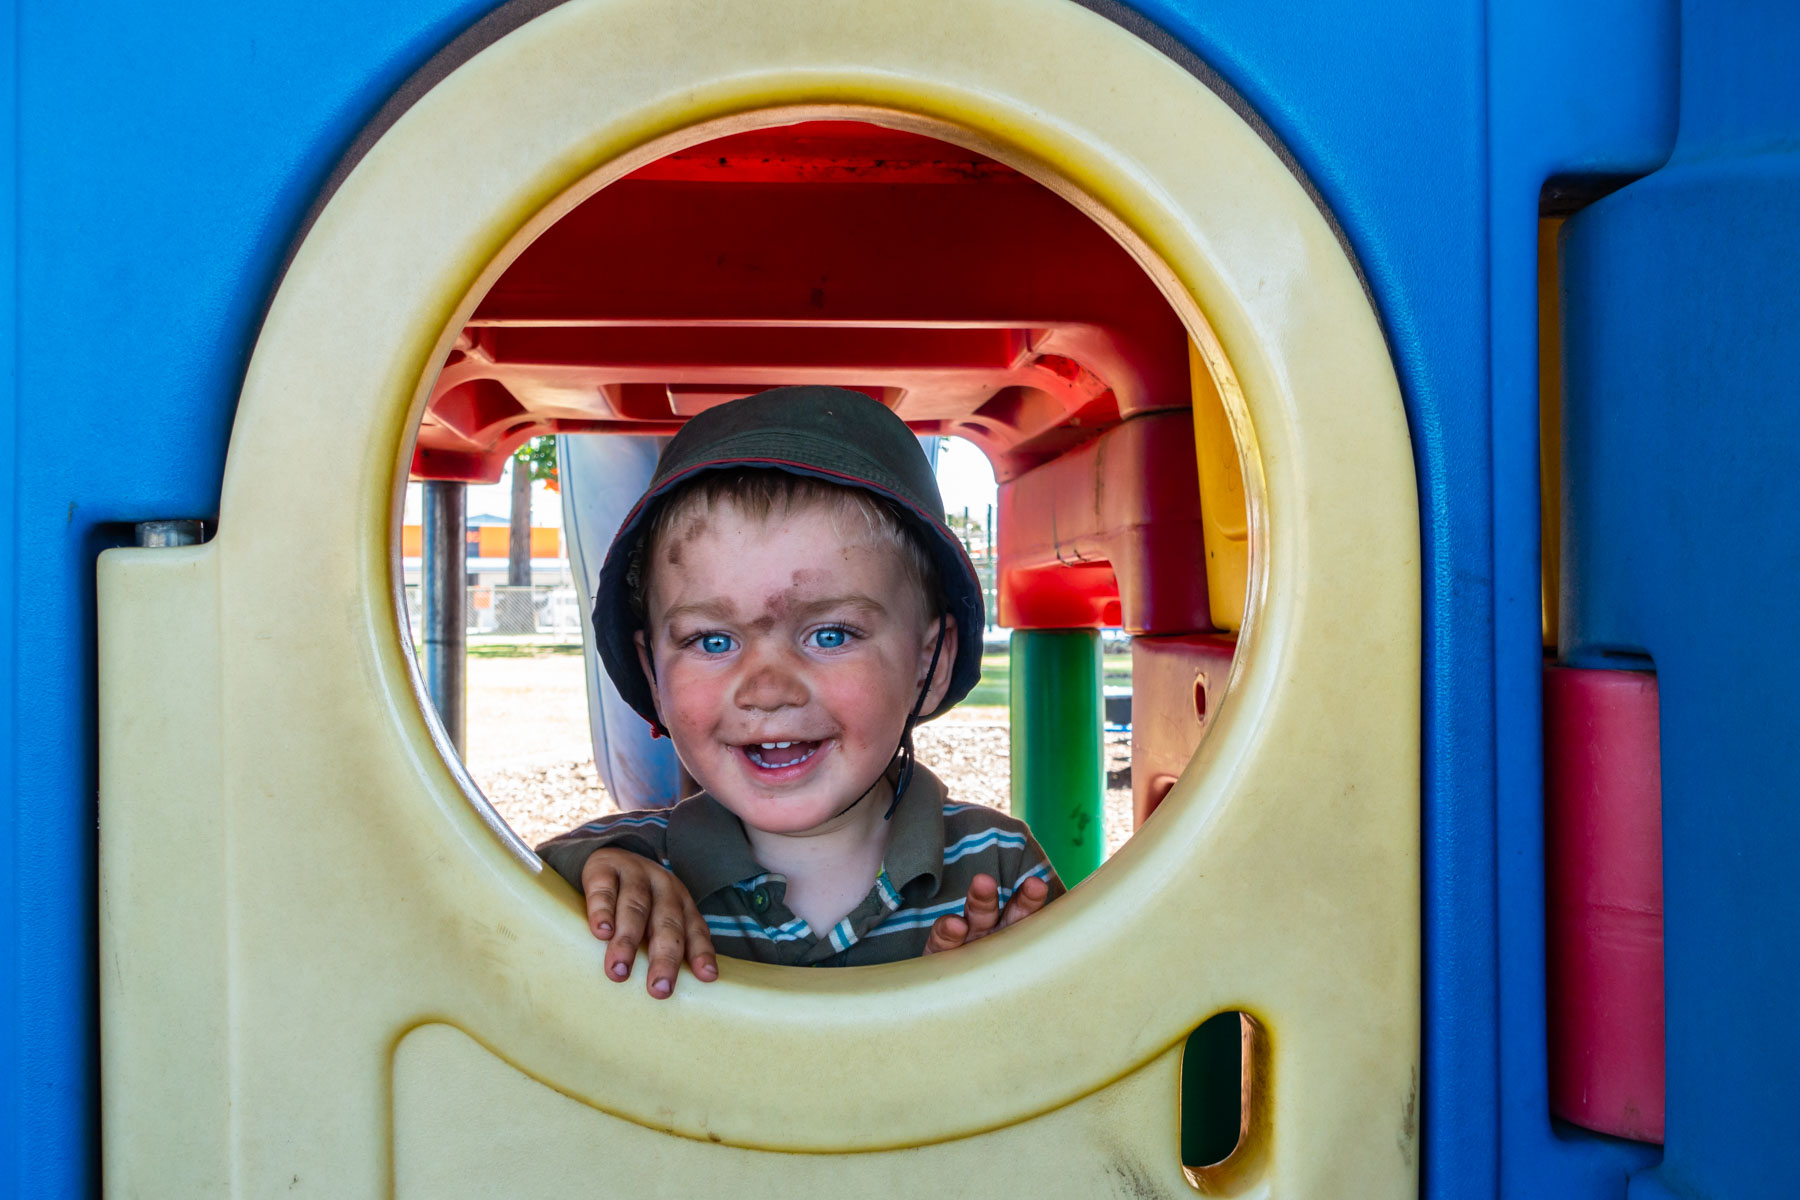 Le visage barbouillé de terre, un jeune garçon sourit au photographe par l'ouverture d'un module de jeux jaune et bleu.